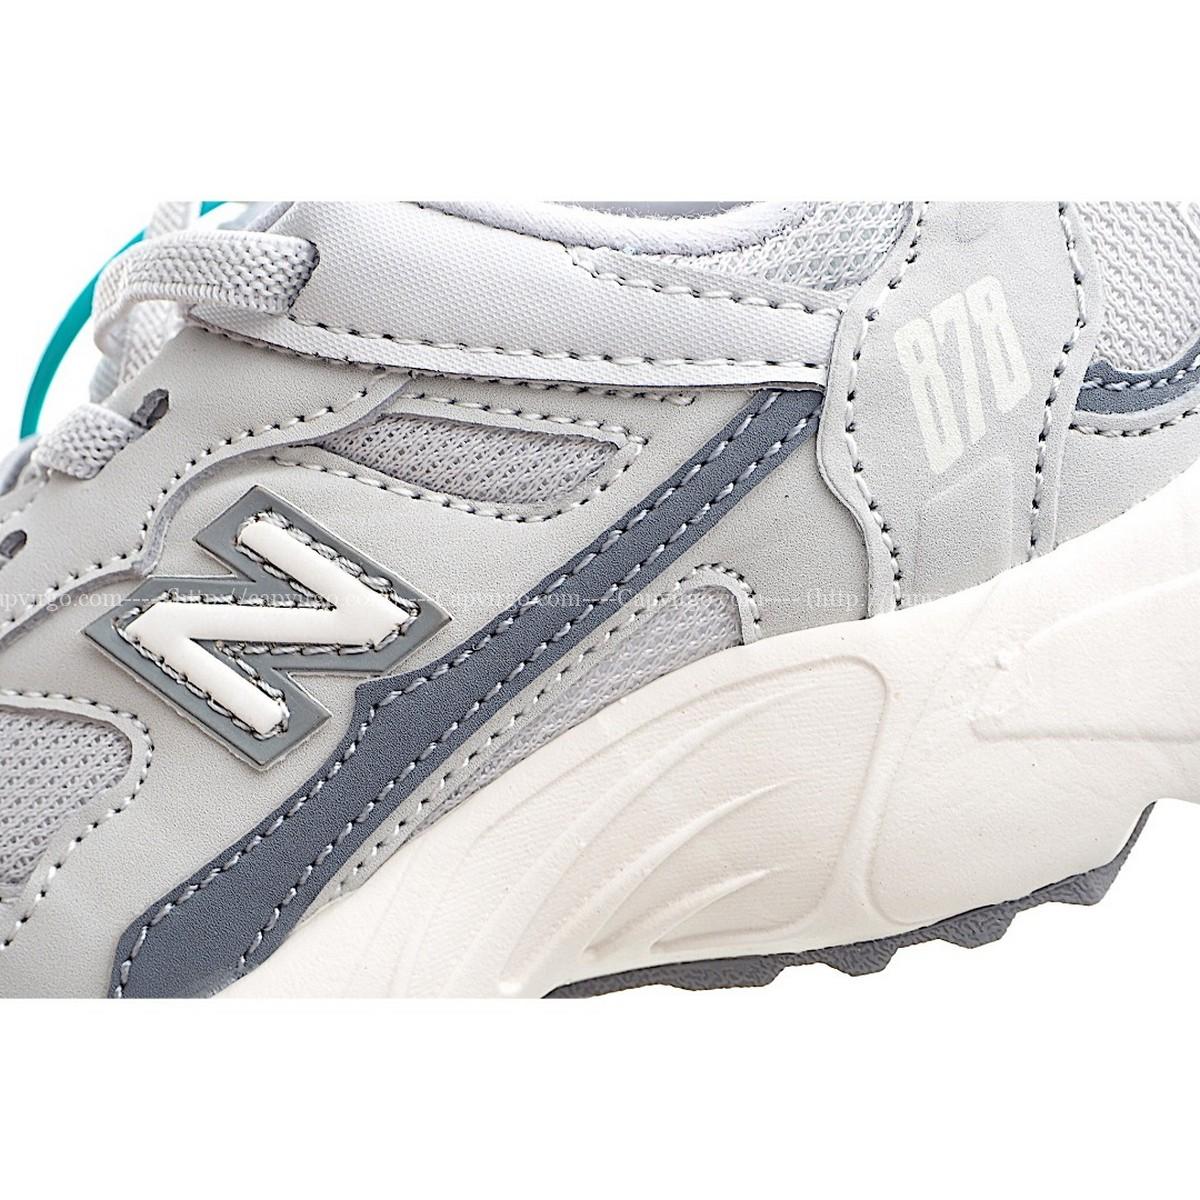 Giày chạy bộ trẻ em newbalance 878 - NB878 màu ghi vạch xanh